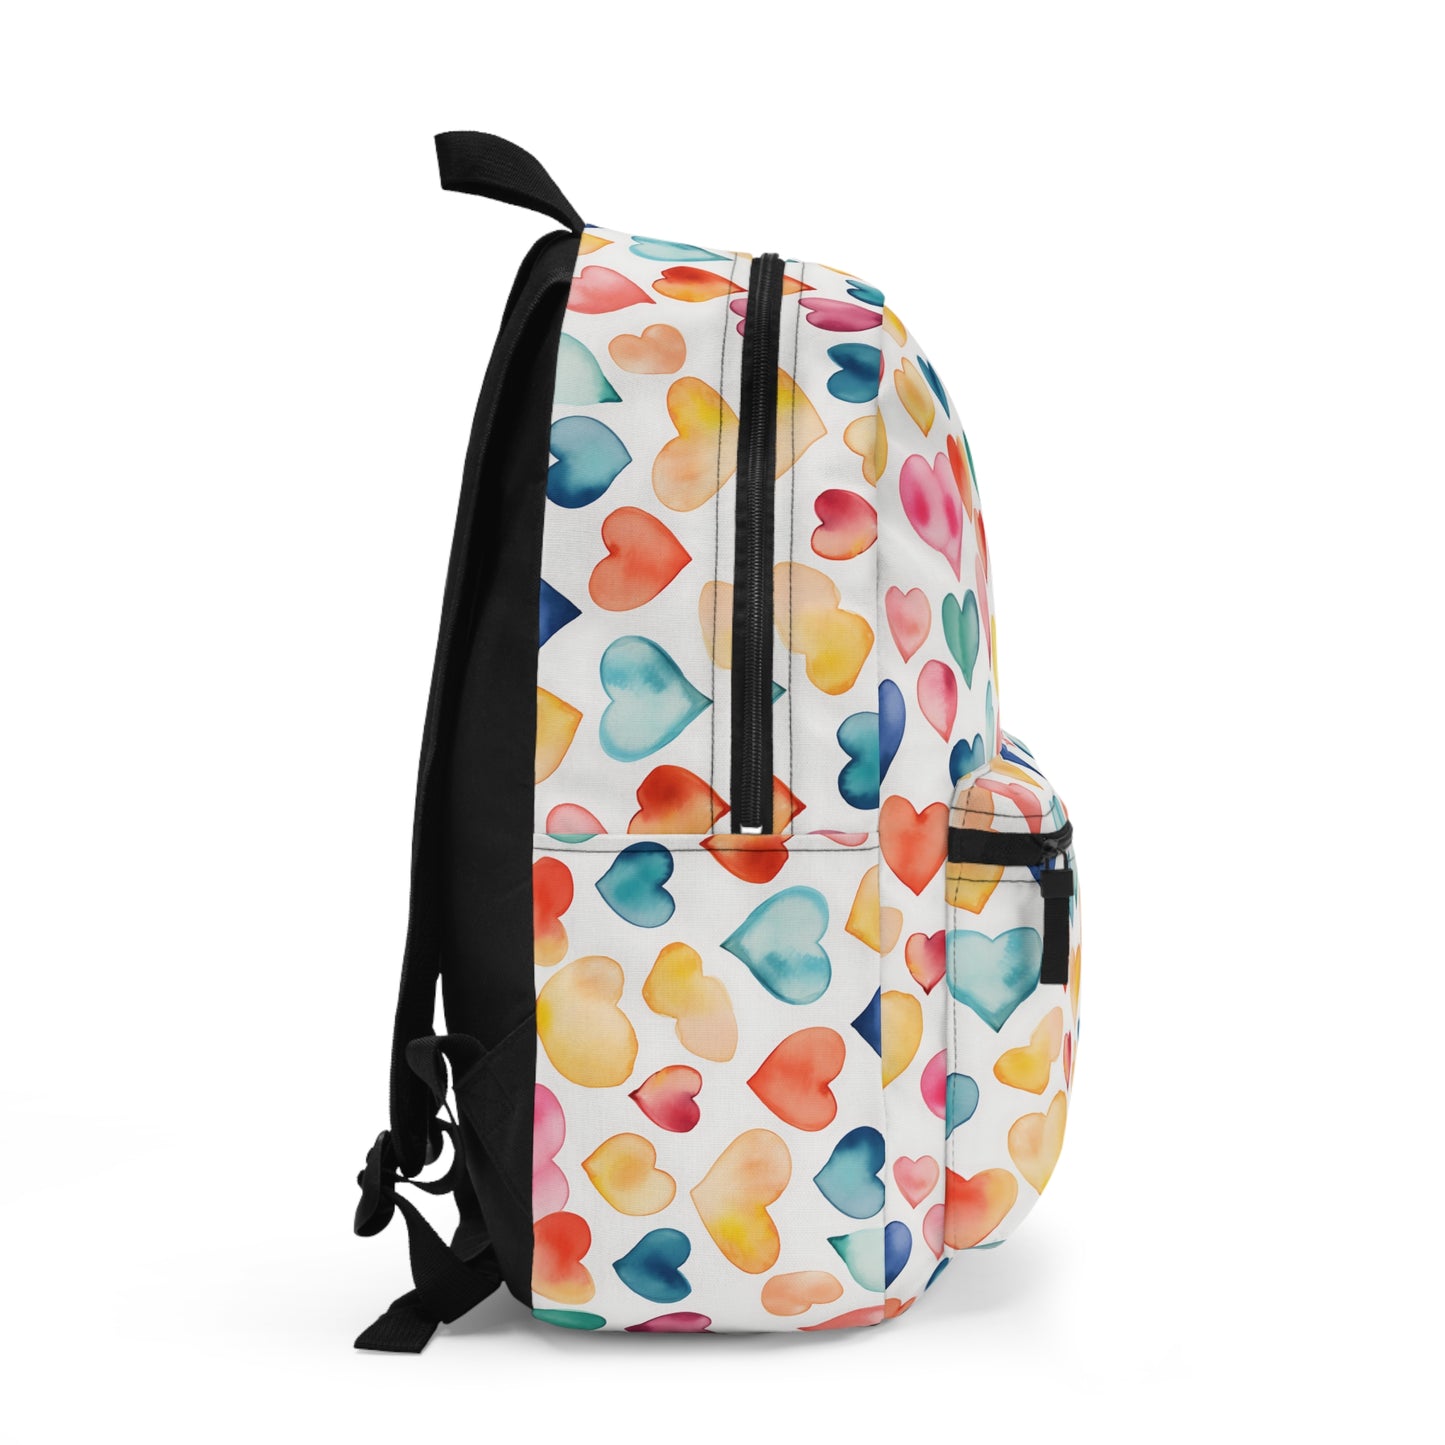 Heart Backpack / Girl's School Bag